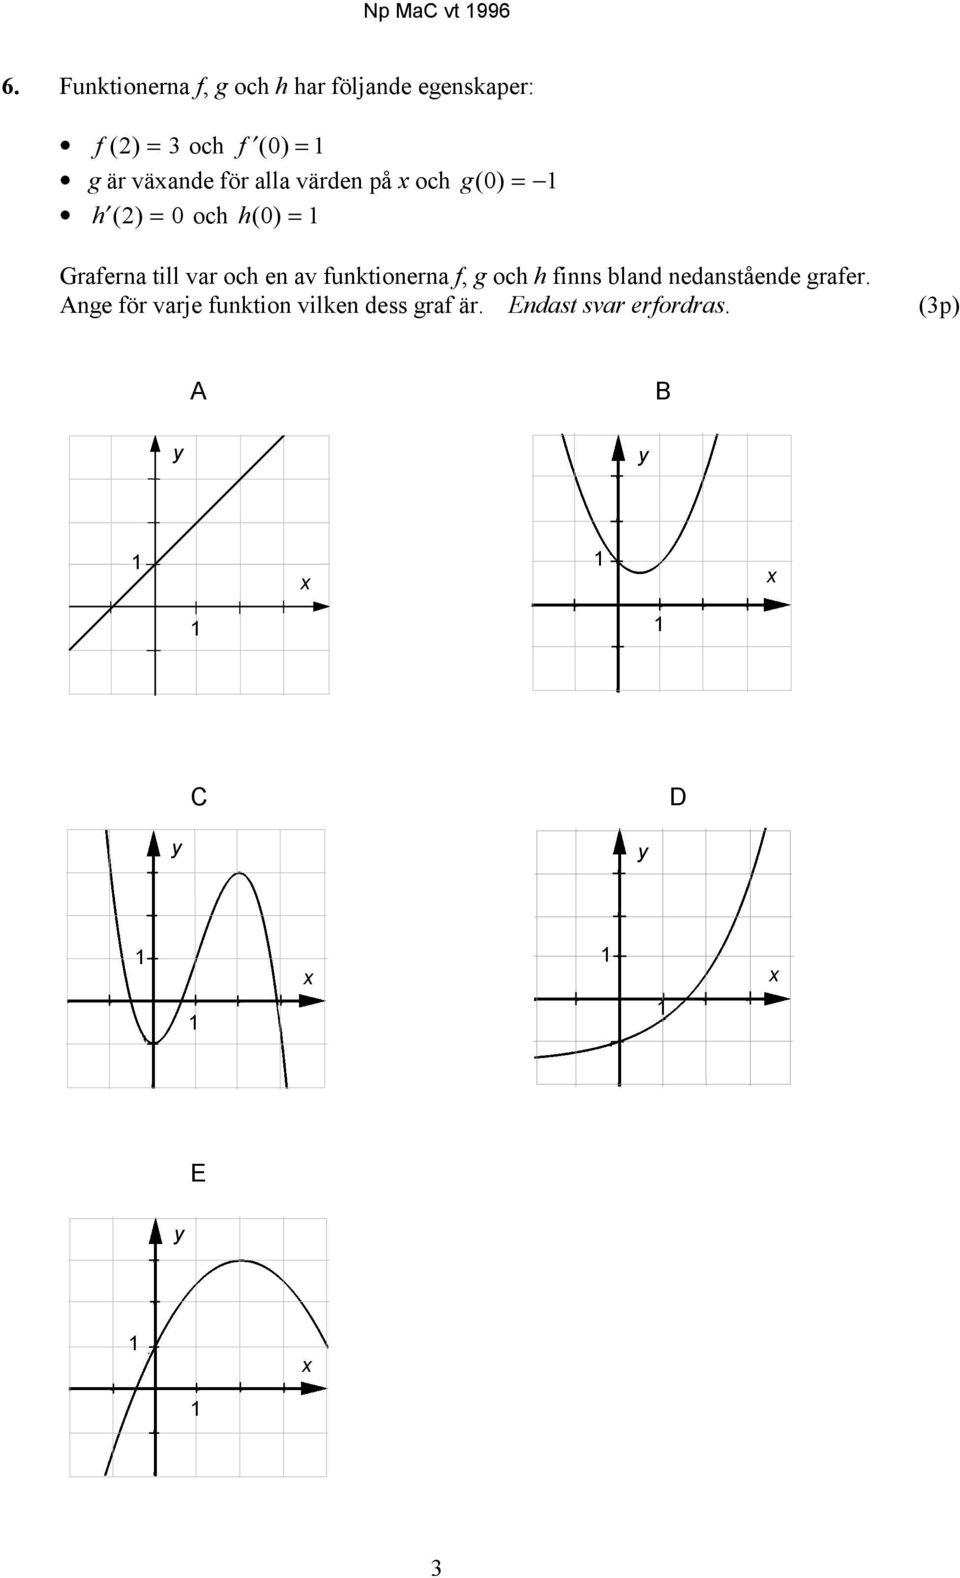 en av funktionerna f, g och h finns bland nedanstående grafer.